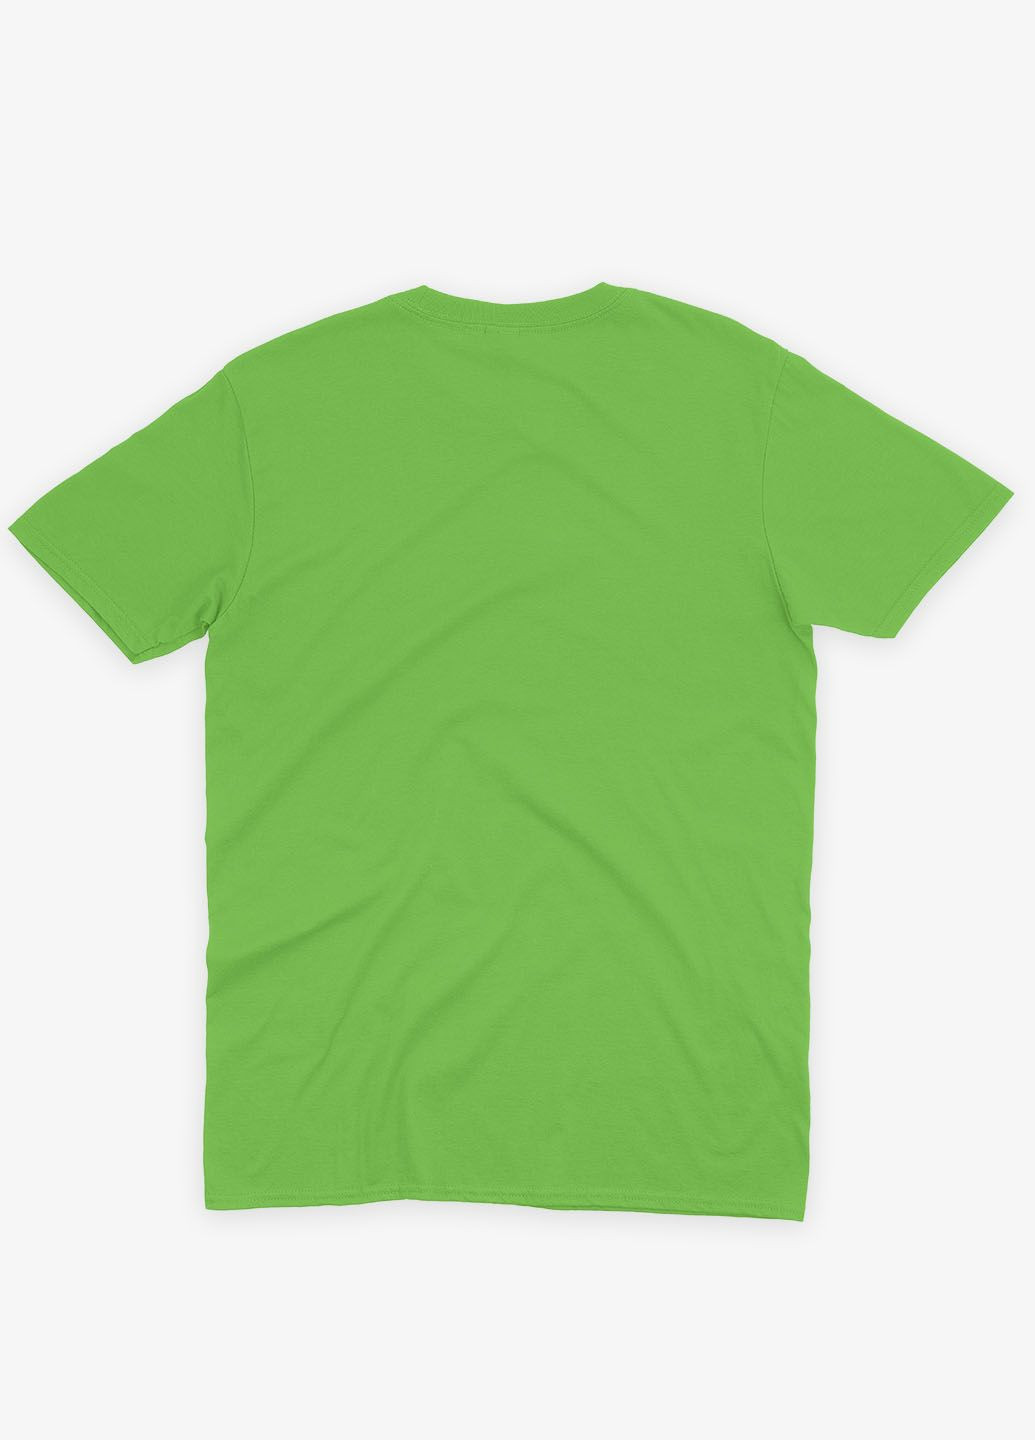 Салатовая мужская футболка с патриотическим принтом тарас шевченко (ts001-2-kiw-005-1-054) Modno